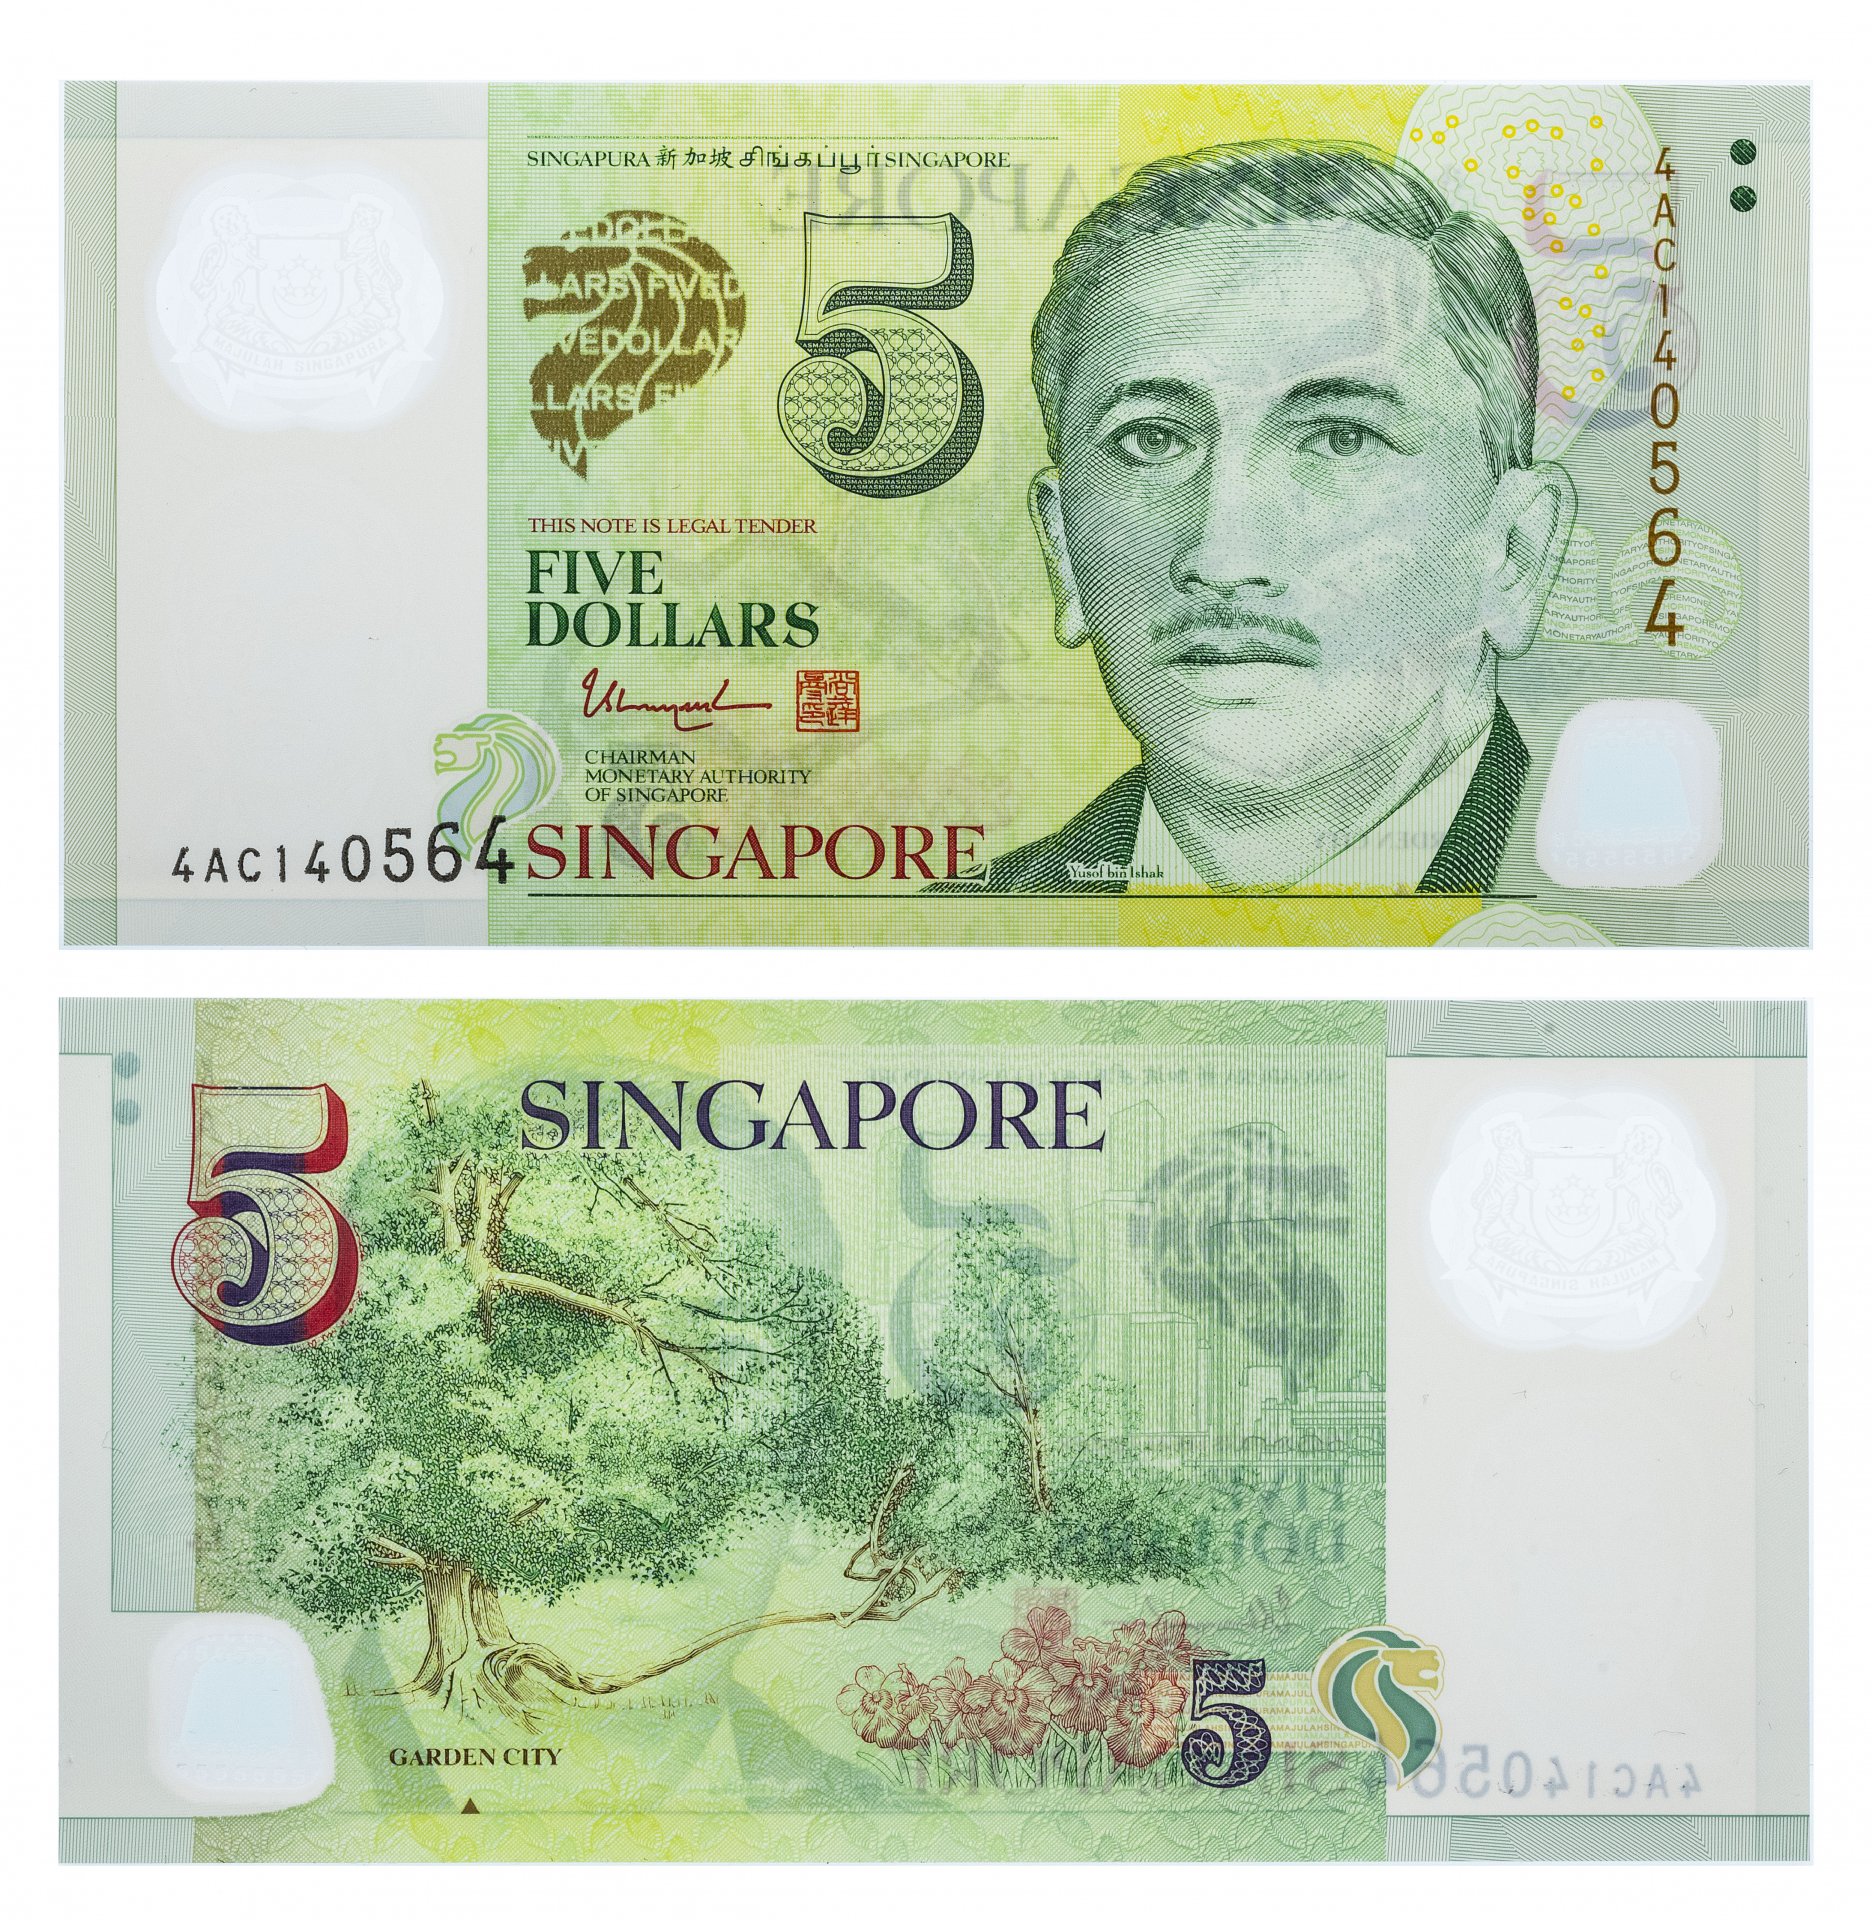 2005 долларов в рублях. Сингапур 5 долларов. Банкнота Сингапур 5 долларов. Банкноты Сингапура.2 долл.. Сингапурский доллар банкнота.